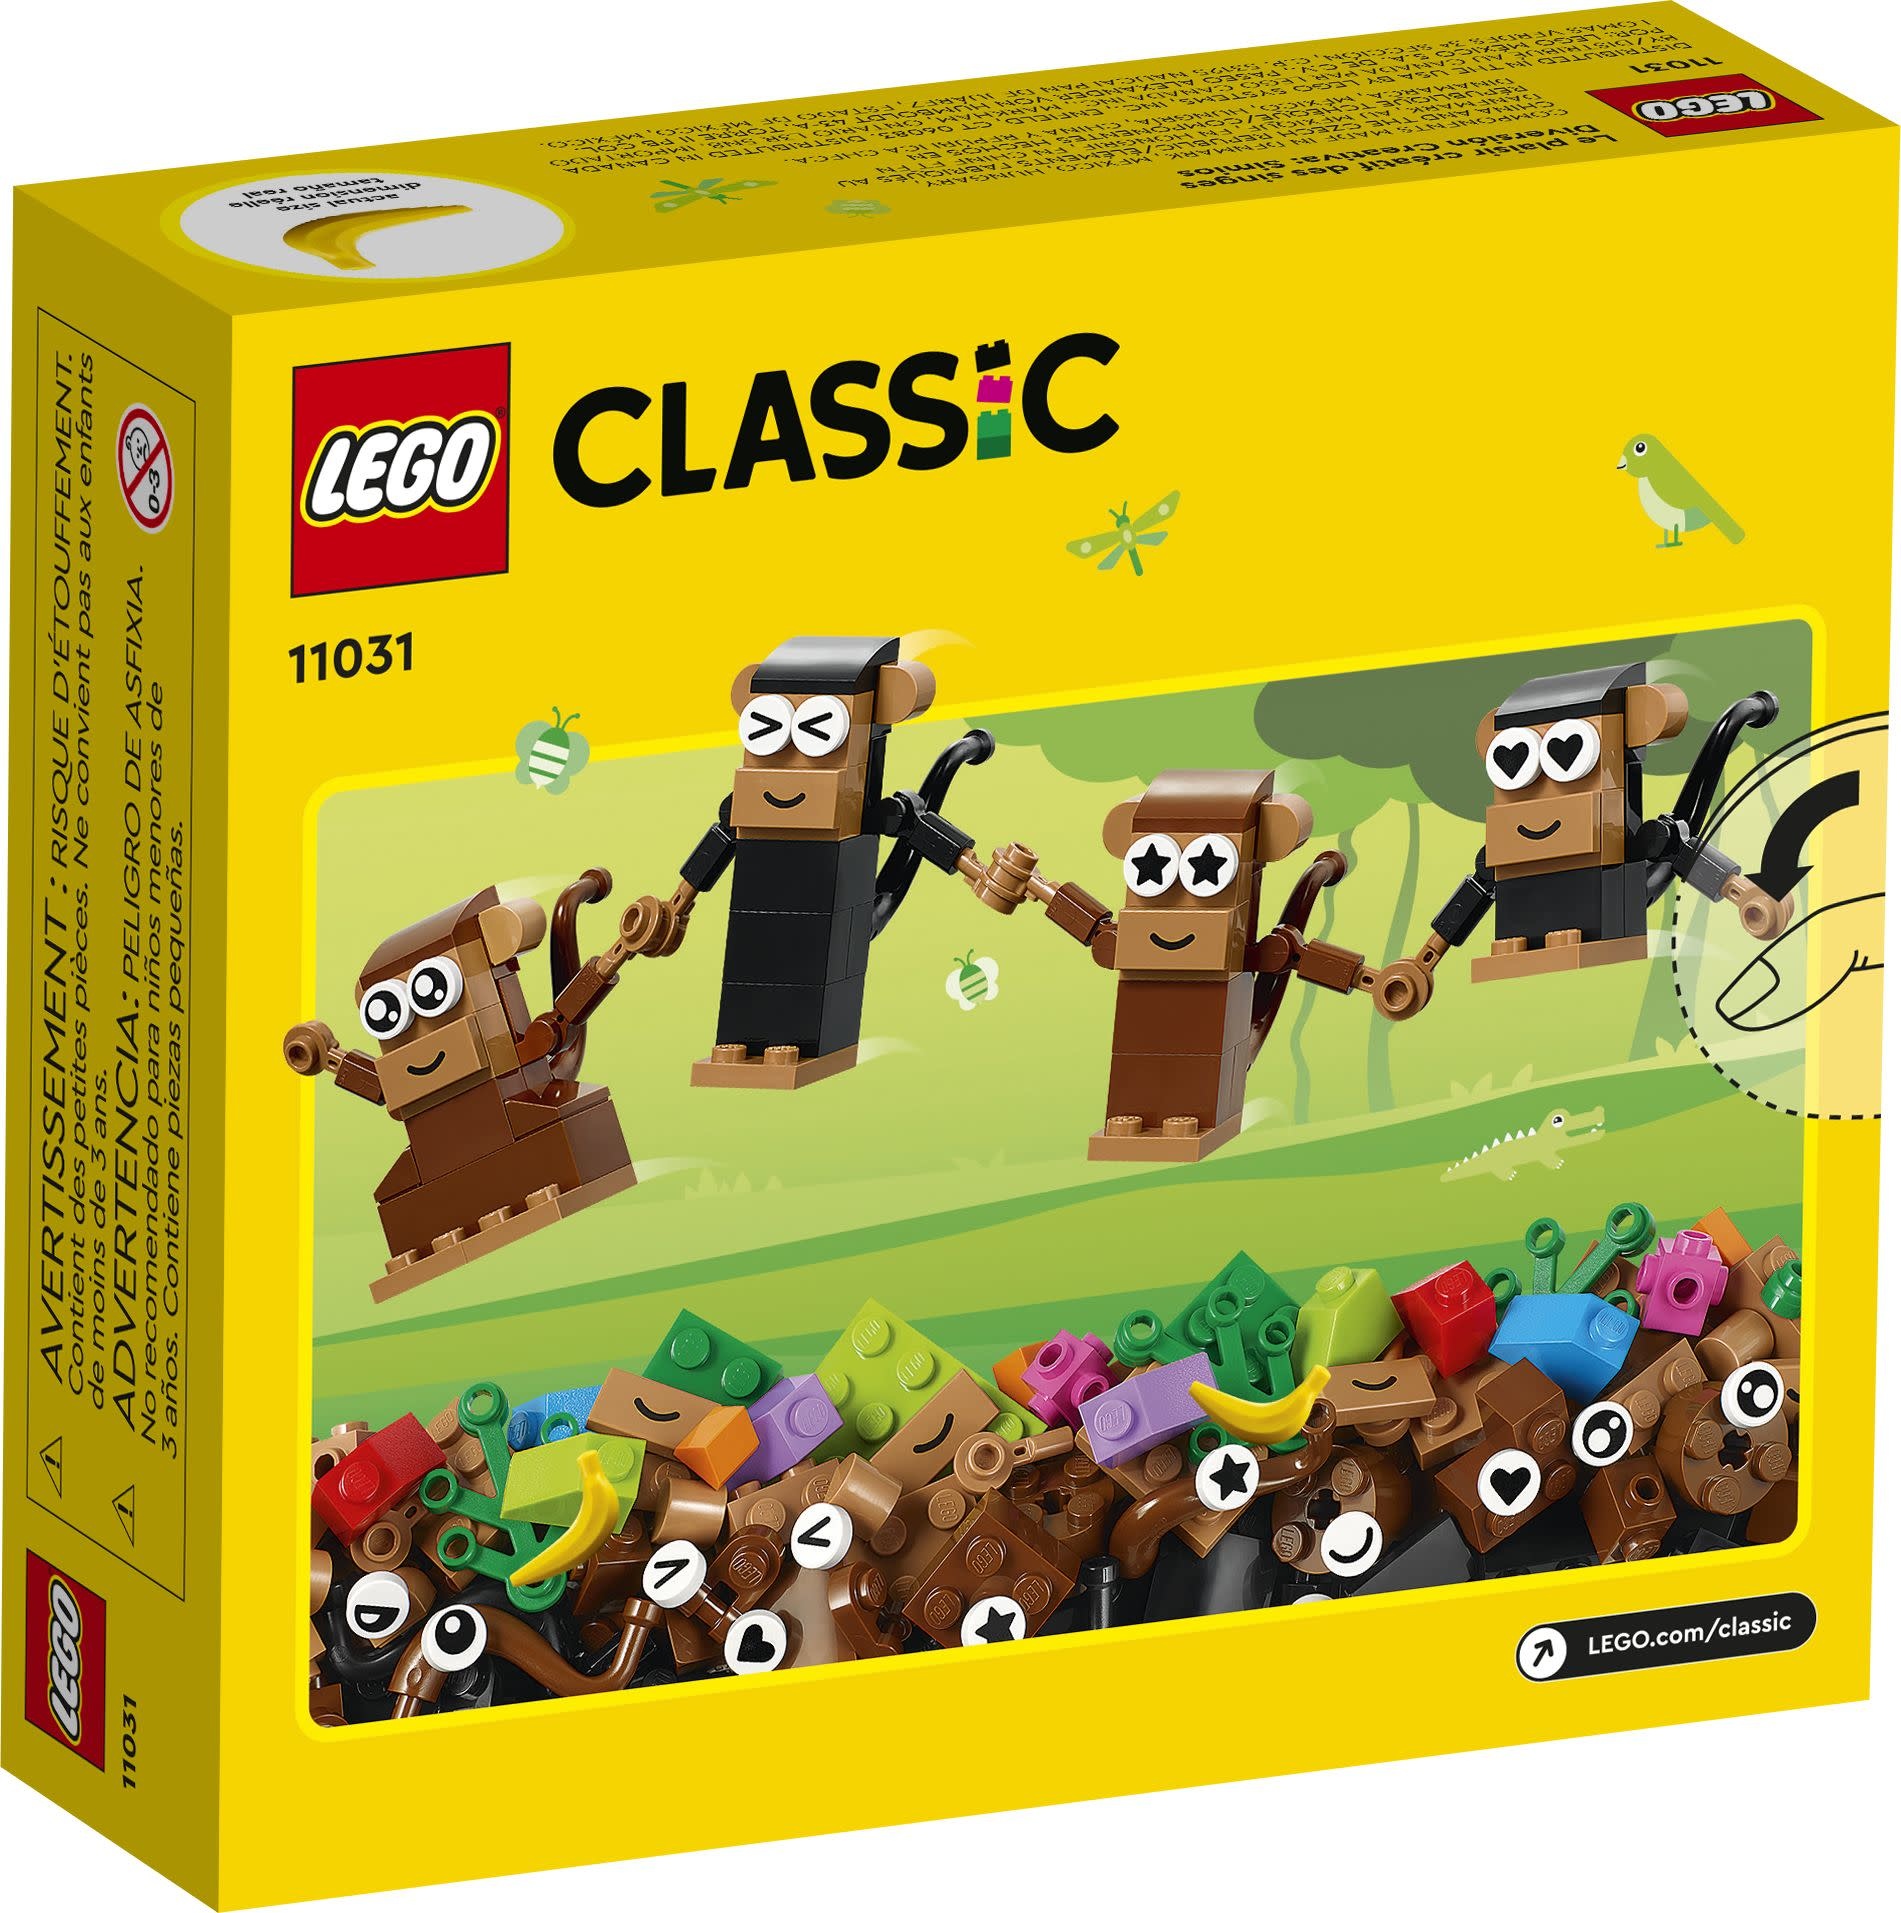 Lego Lego 11031 Classic - Le plaisir créatif des singes